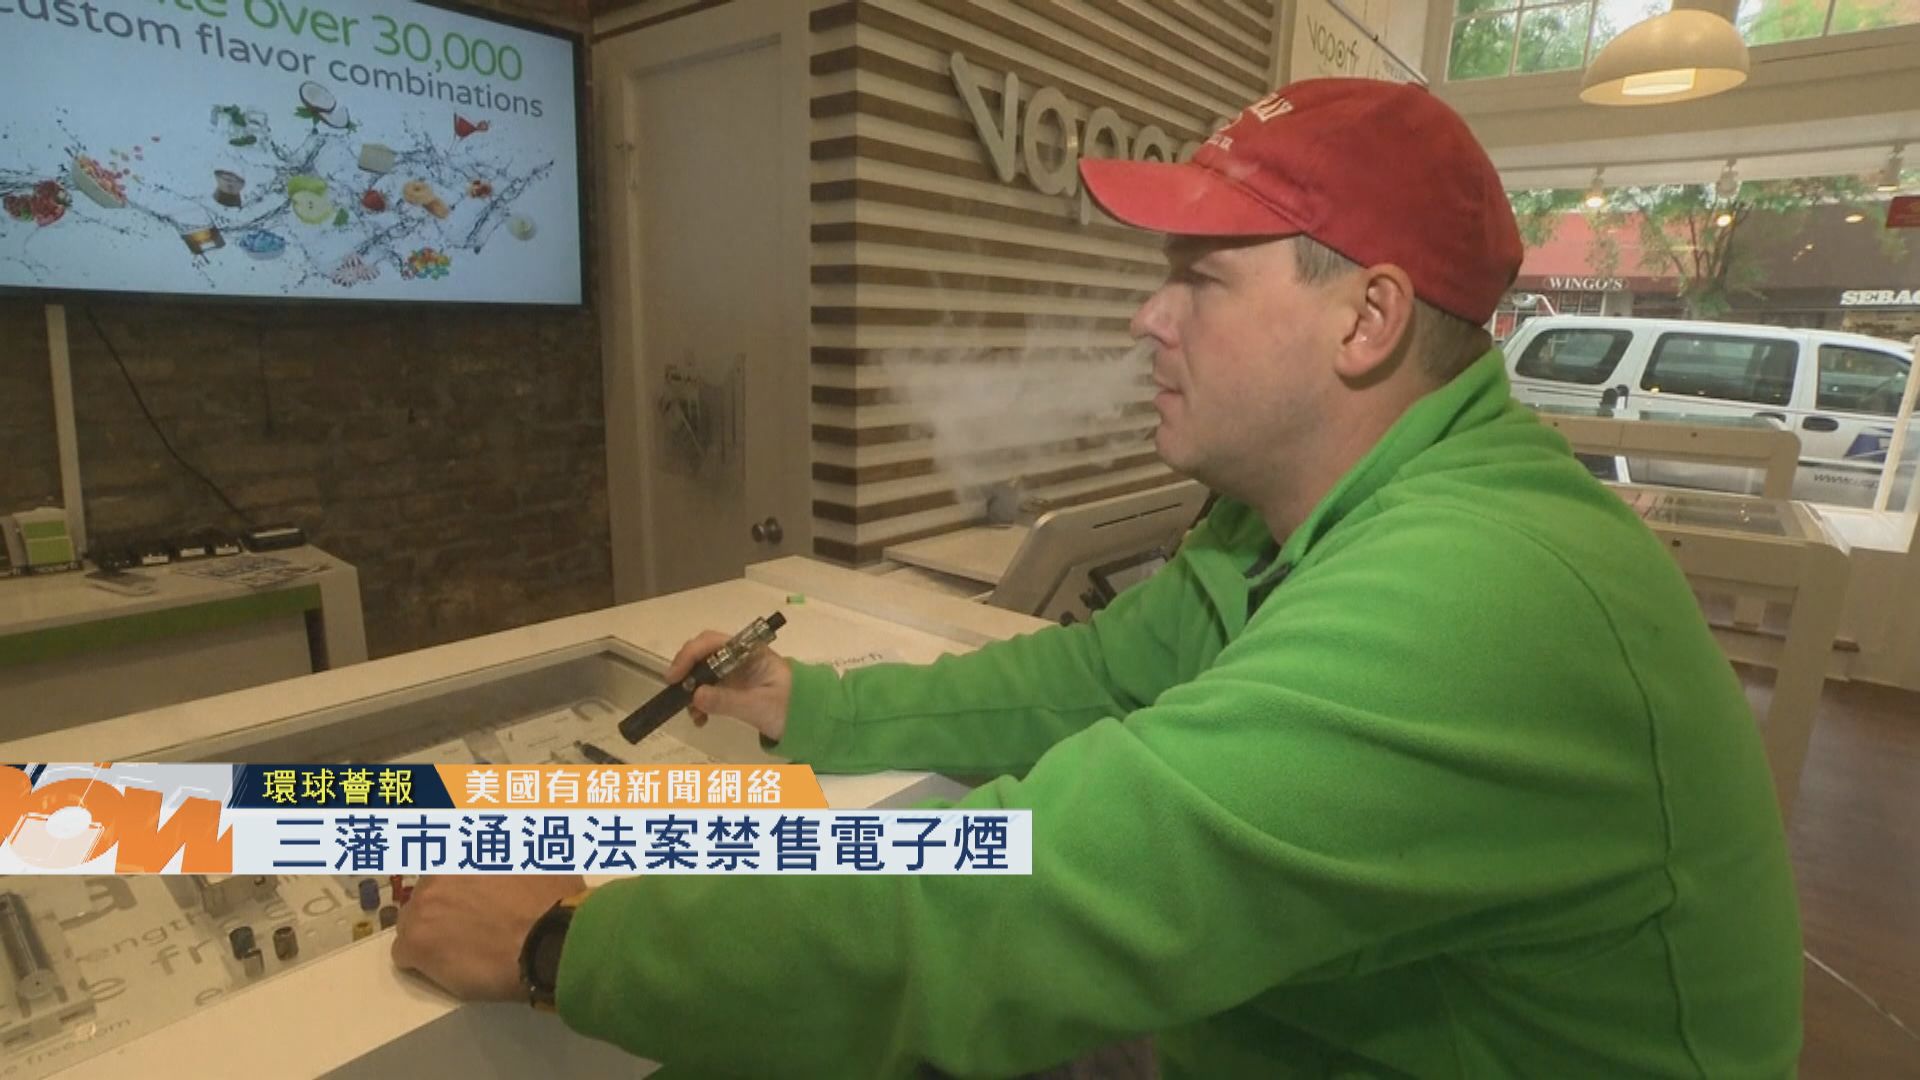 【環球薈報】三藩市通過法案禁售電子煙